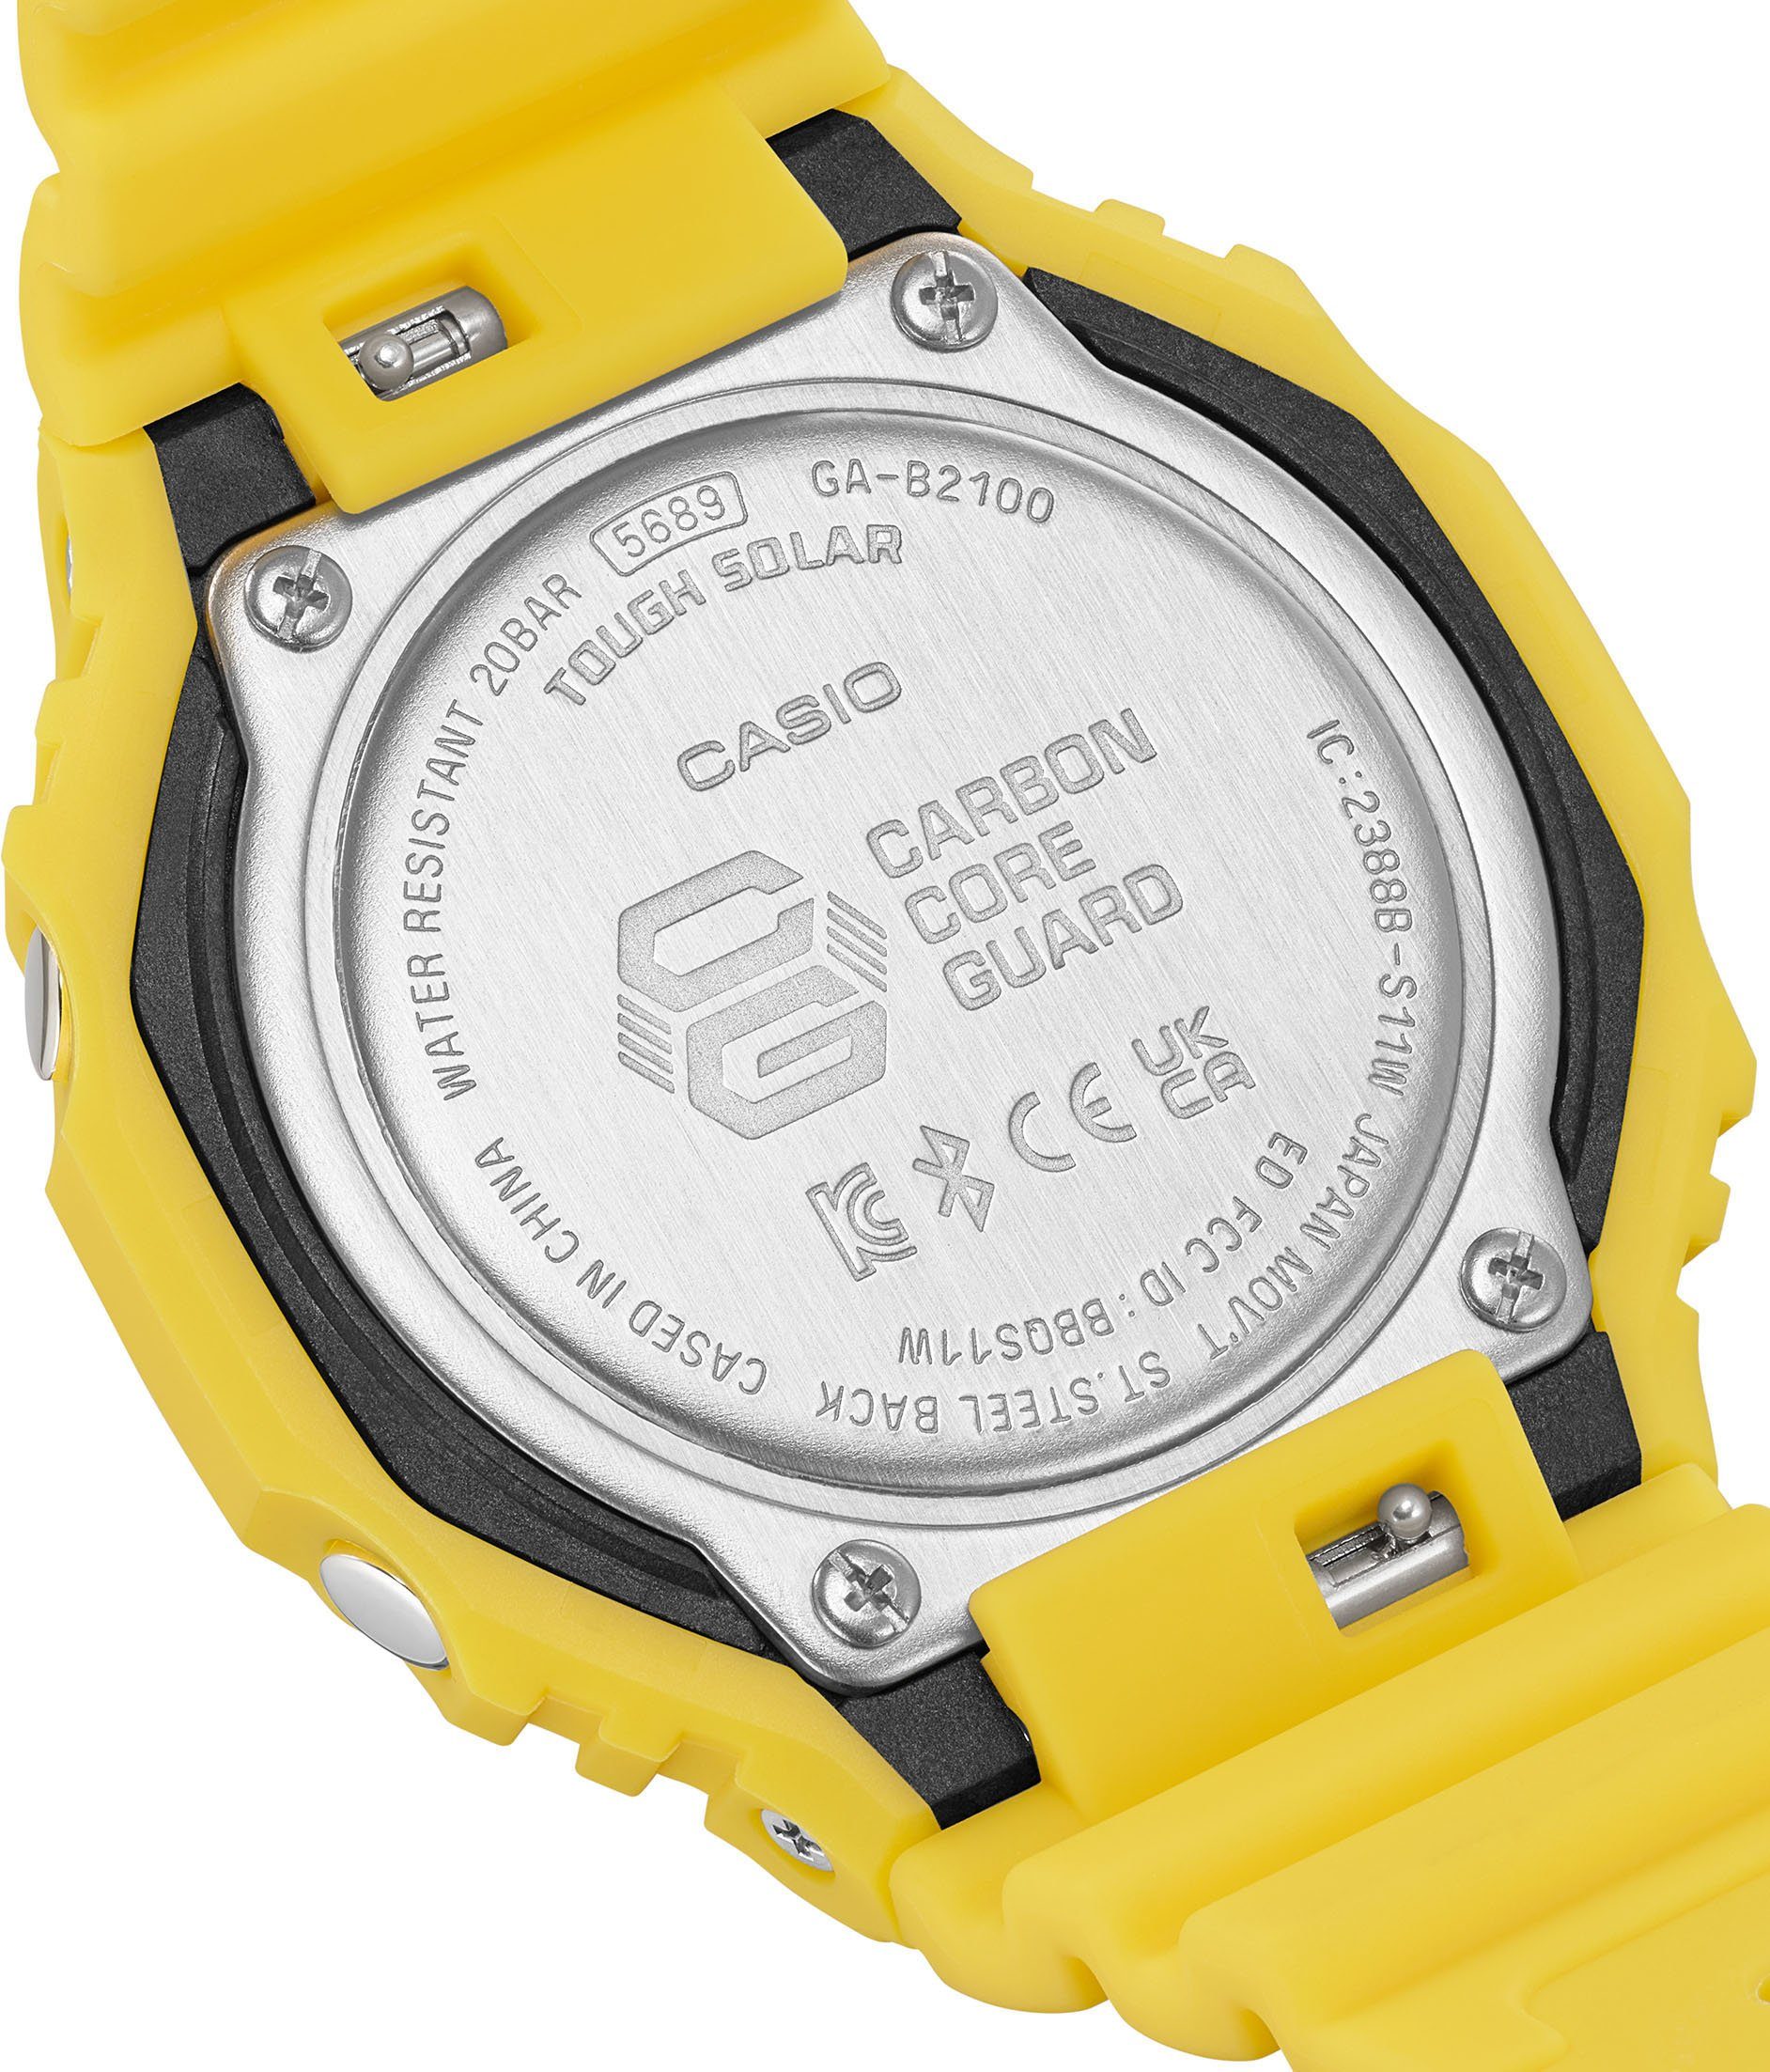 Solar GA-B2100C-9AER CASIO G-SHOCK Smartwatch,